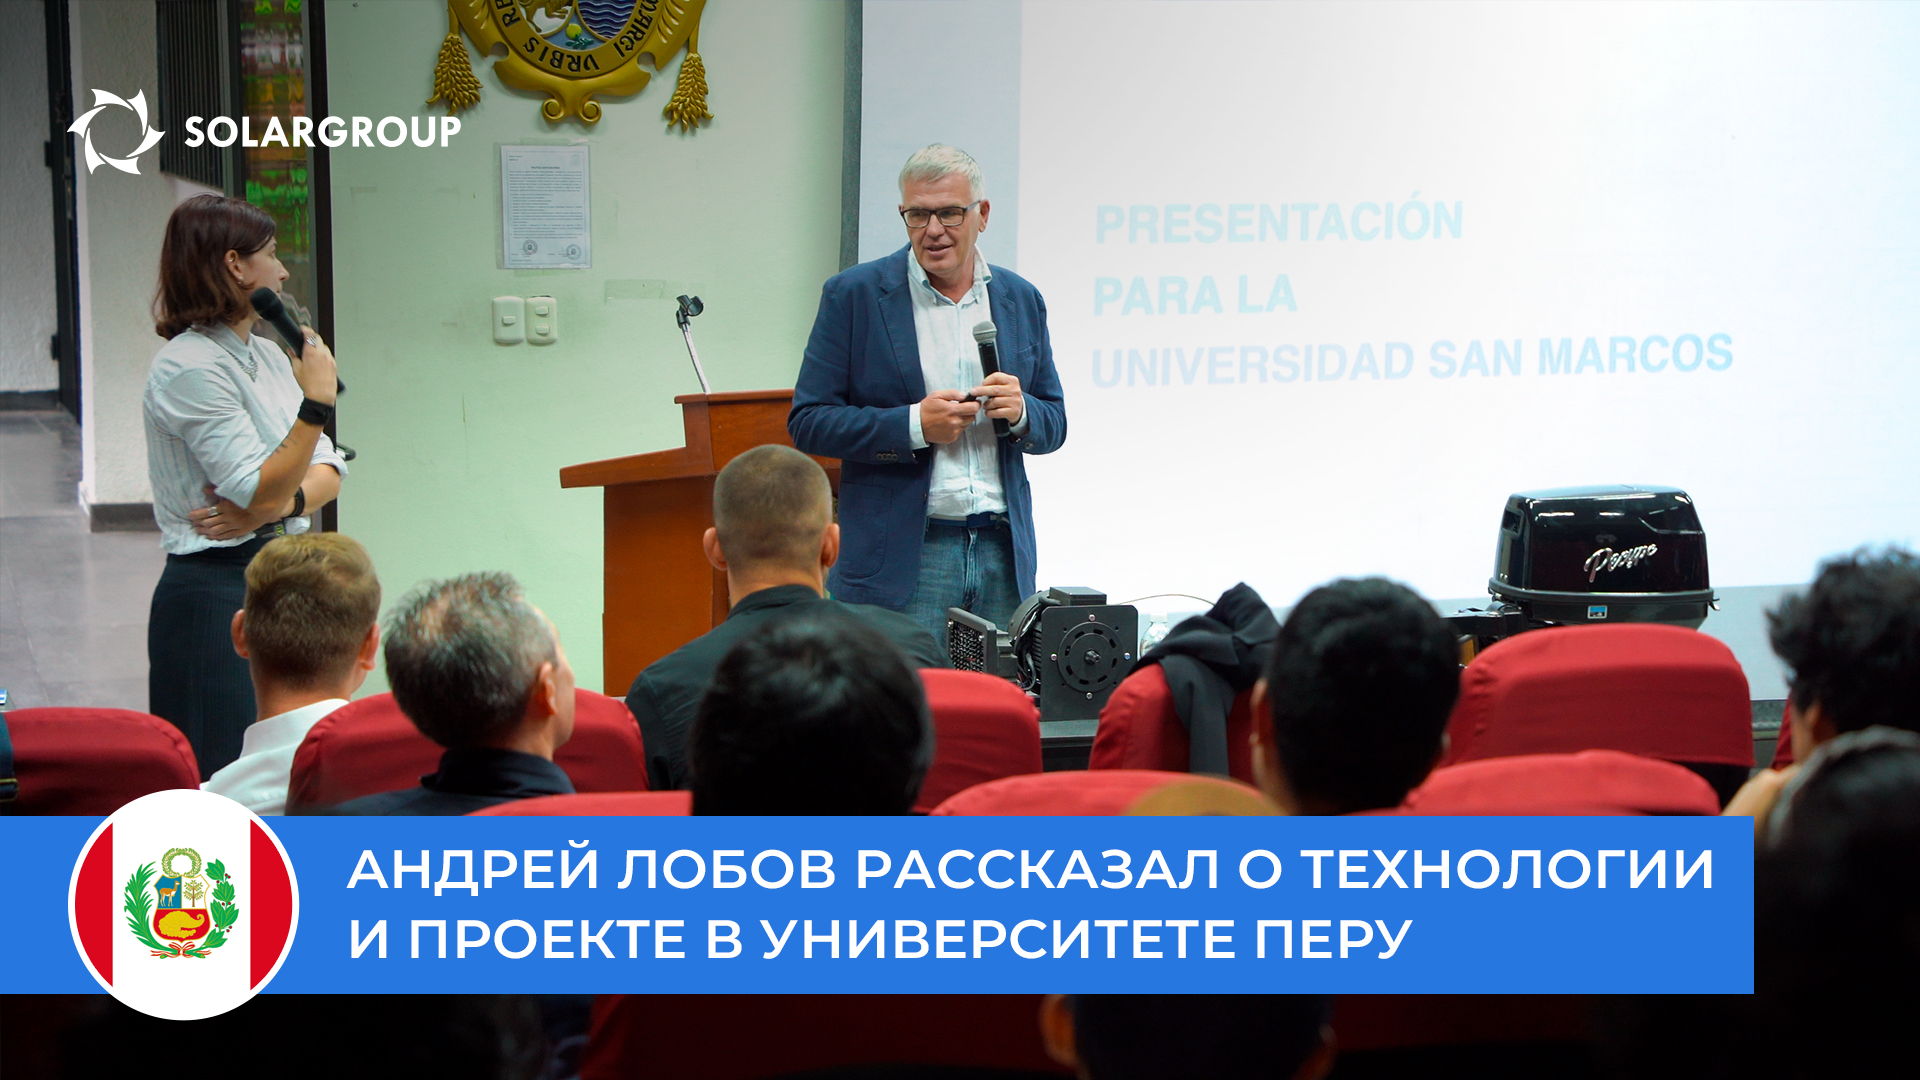 Андрей Лобов рассказал о технологии и проекте студентам и профессуре университета San Marcos